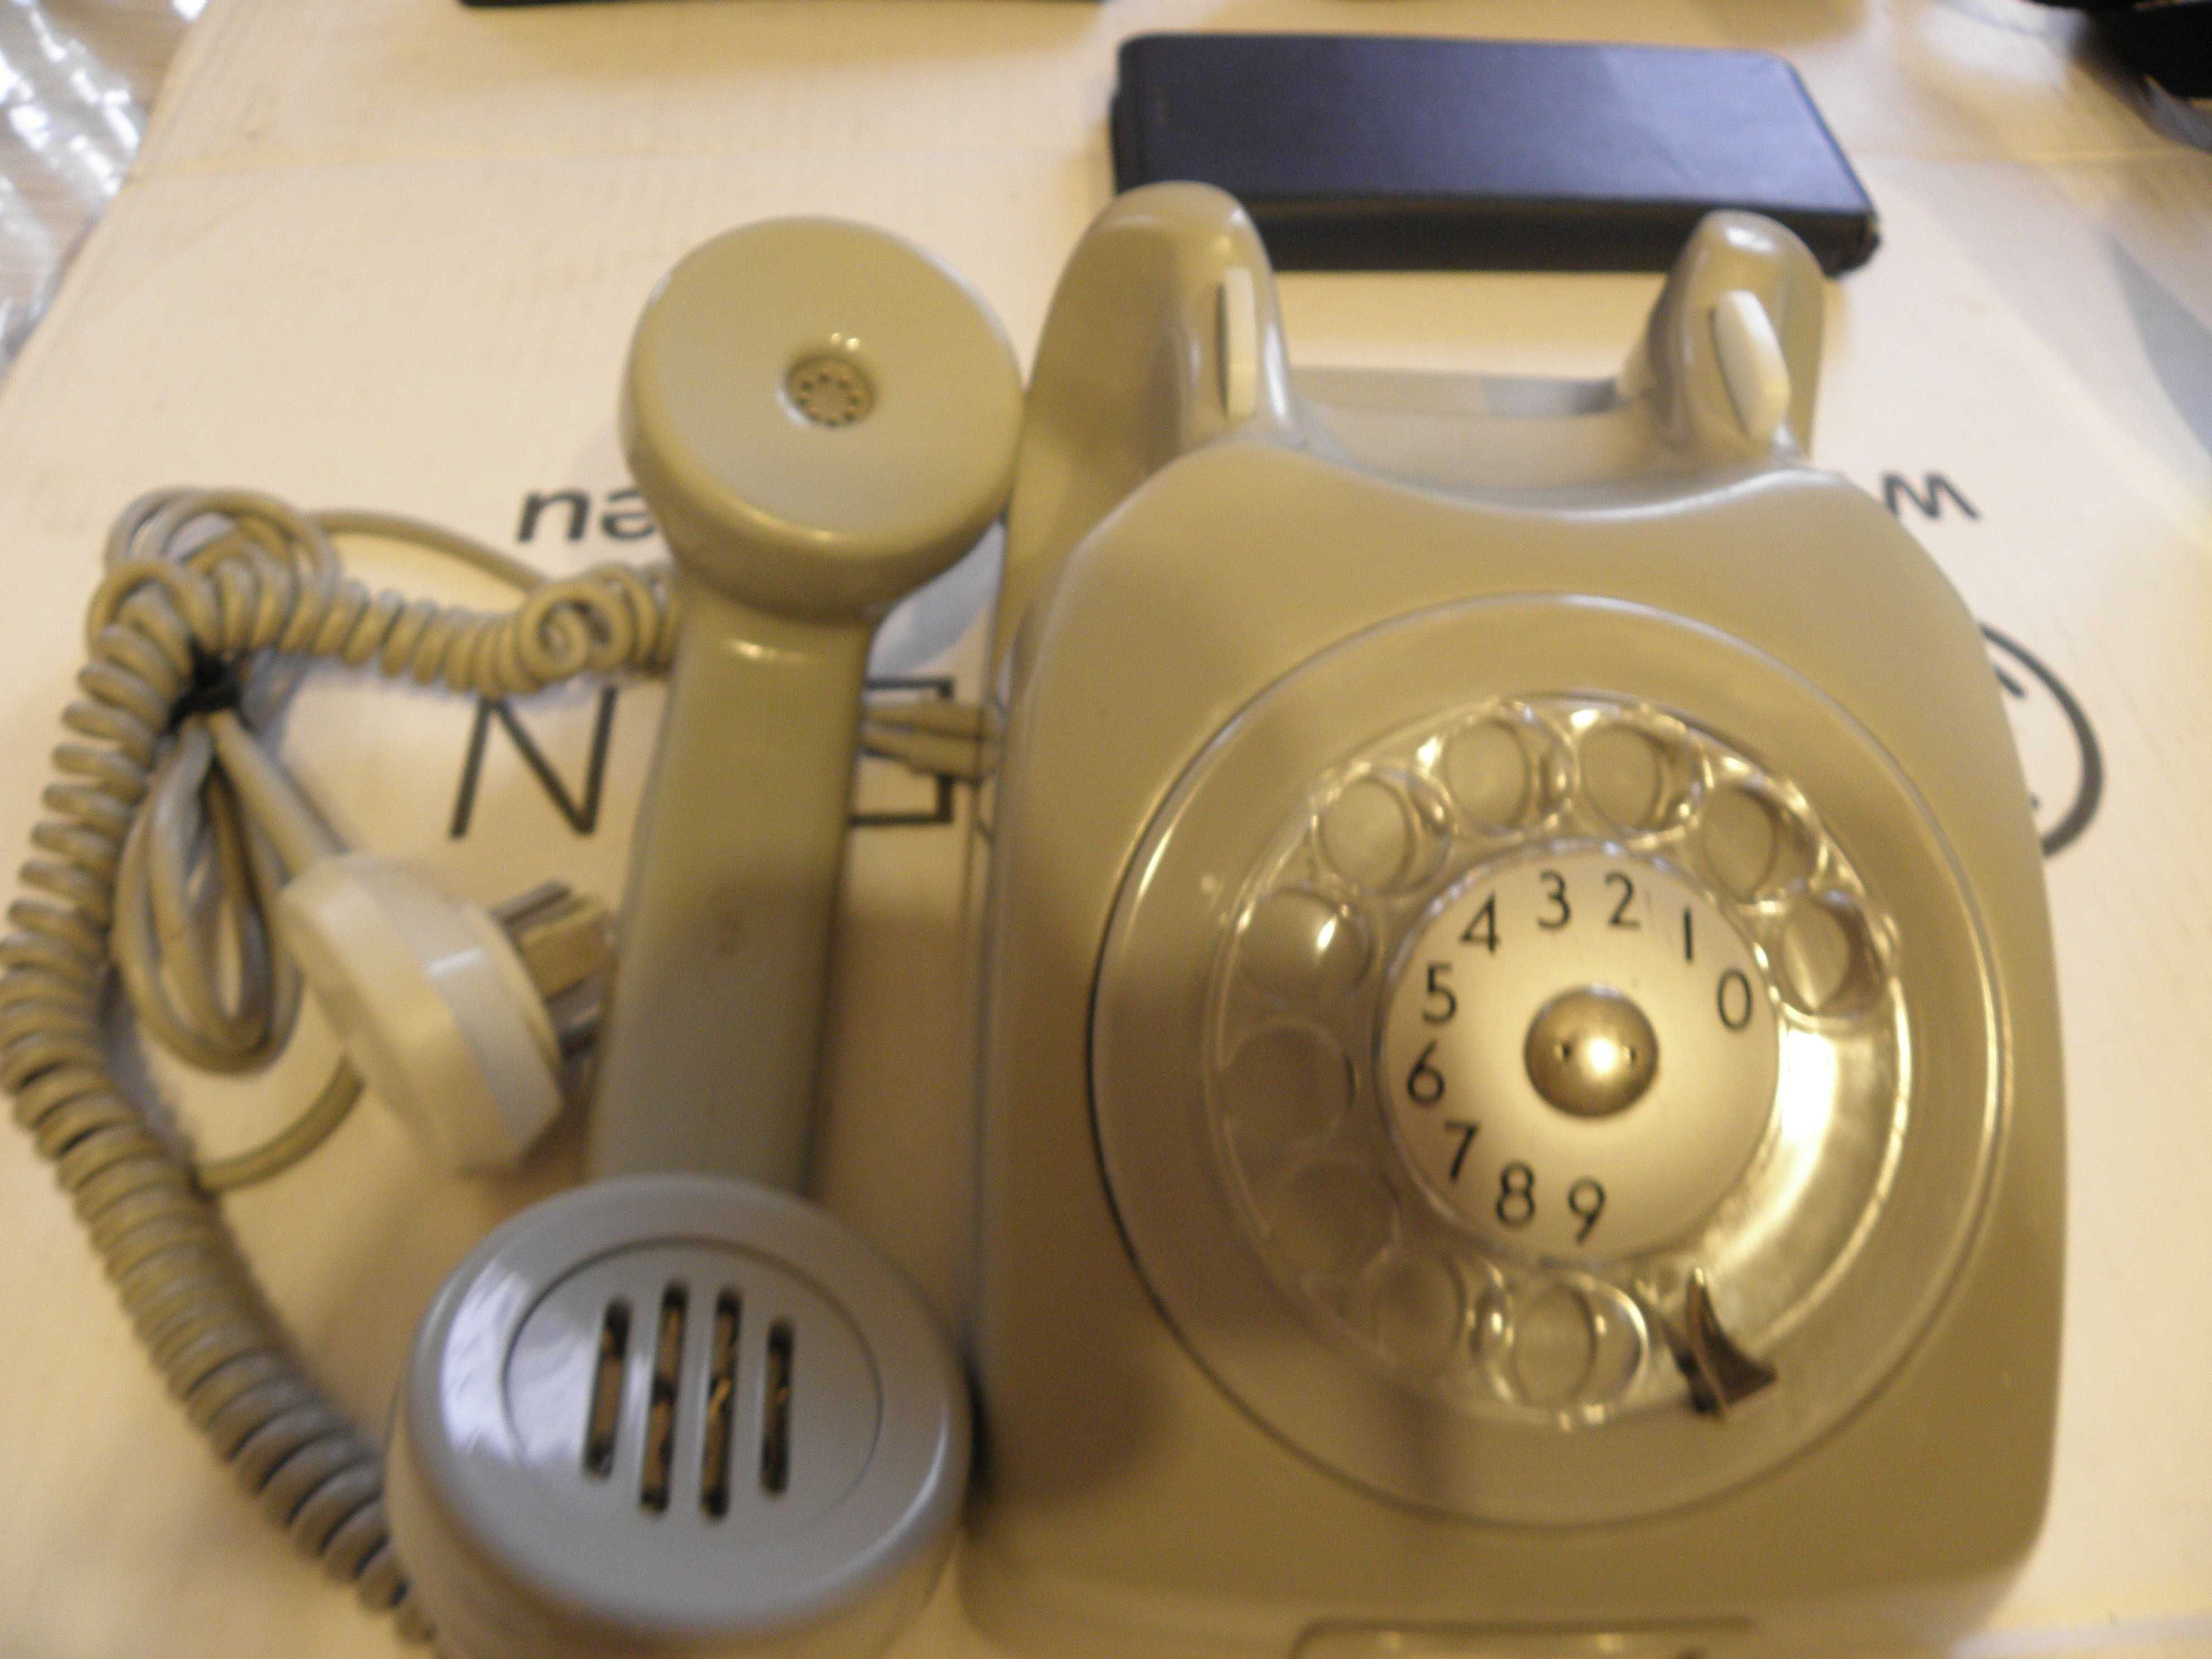 Stary stacjonarny telefon   szwedkiej  firmy Erikson  lata70 - 80-te